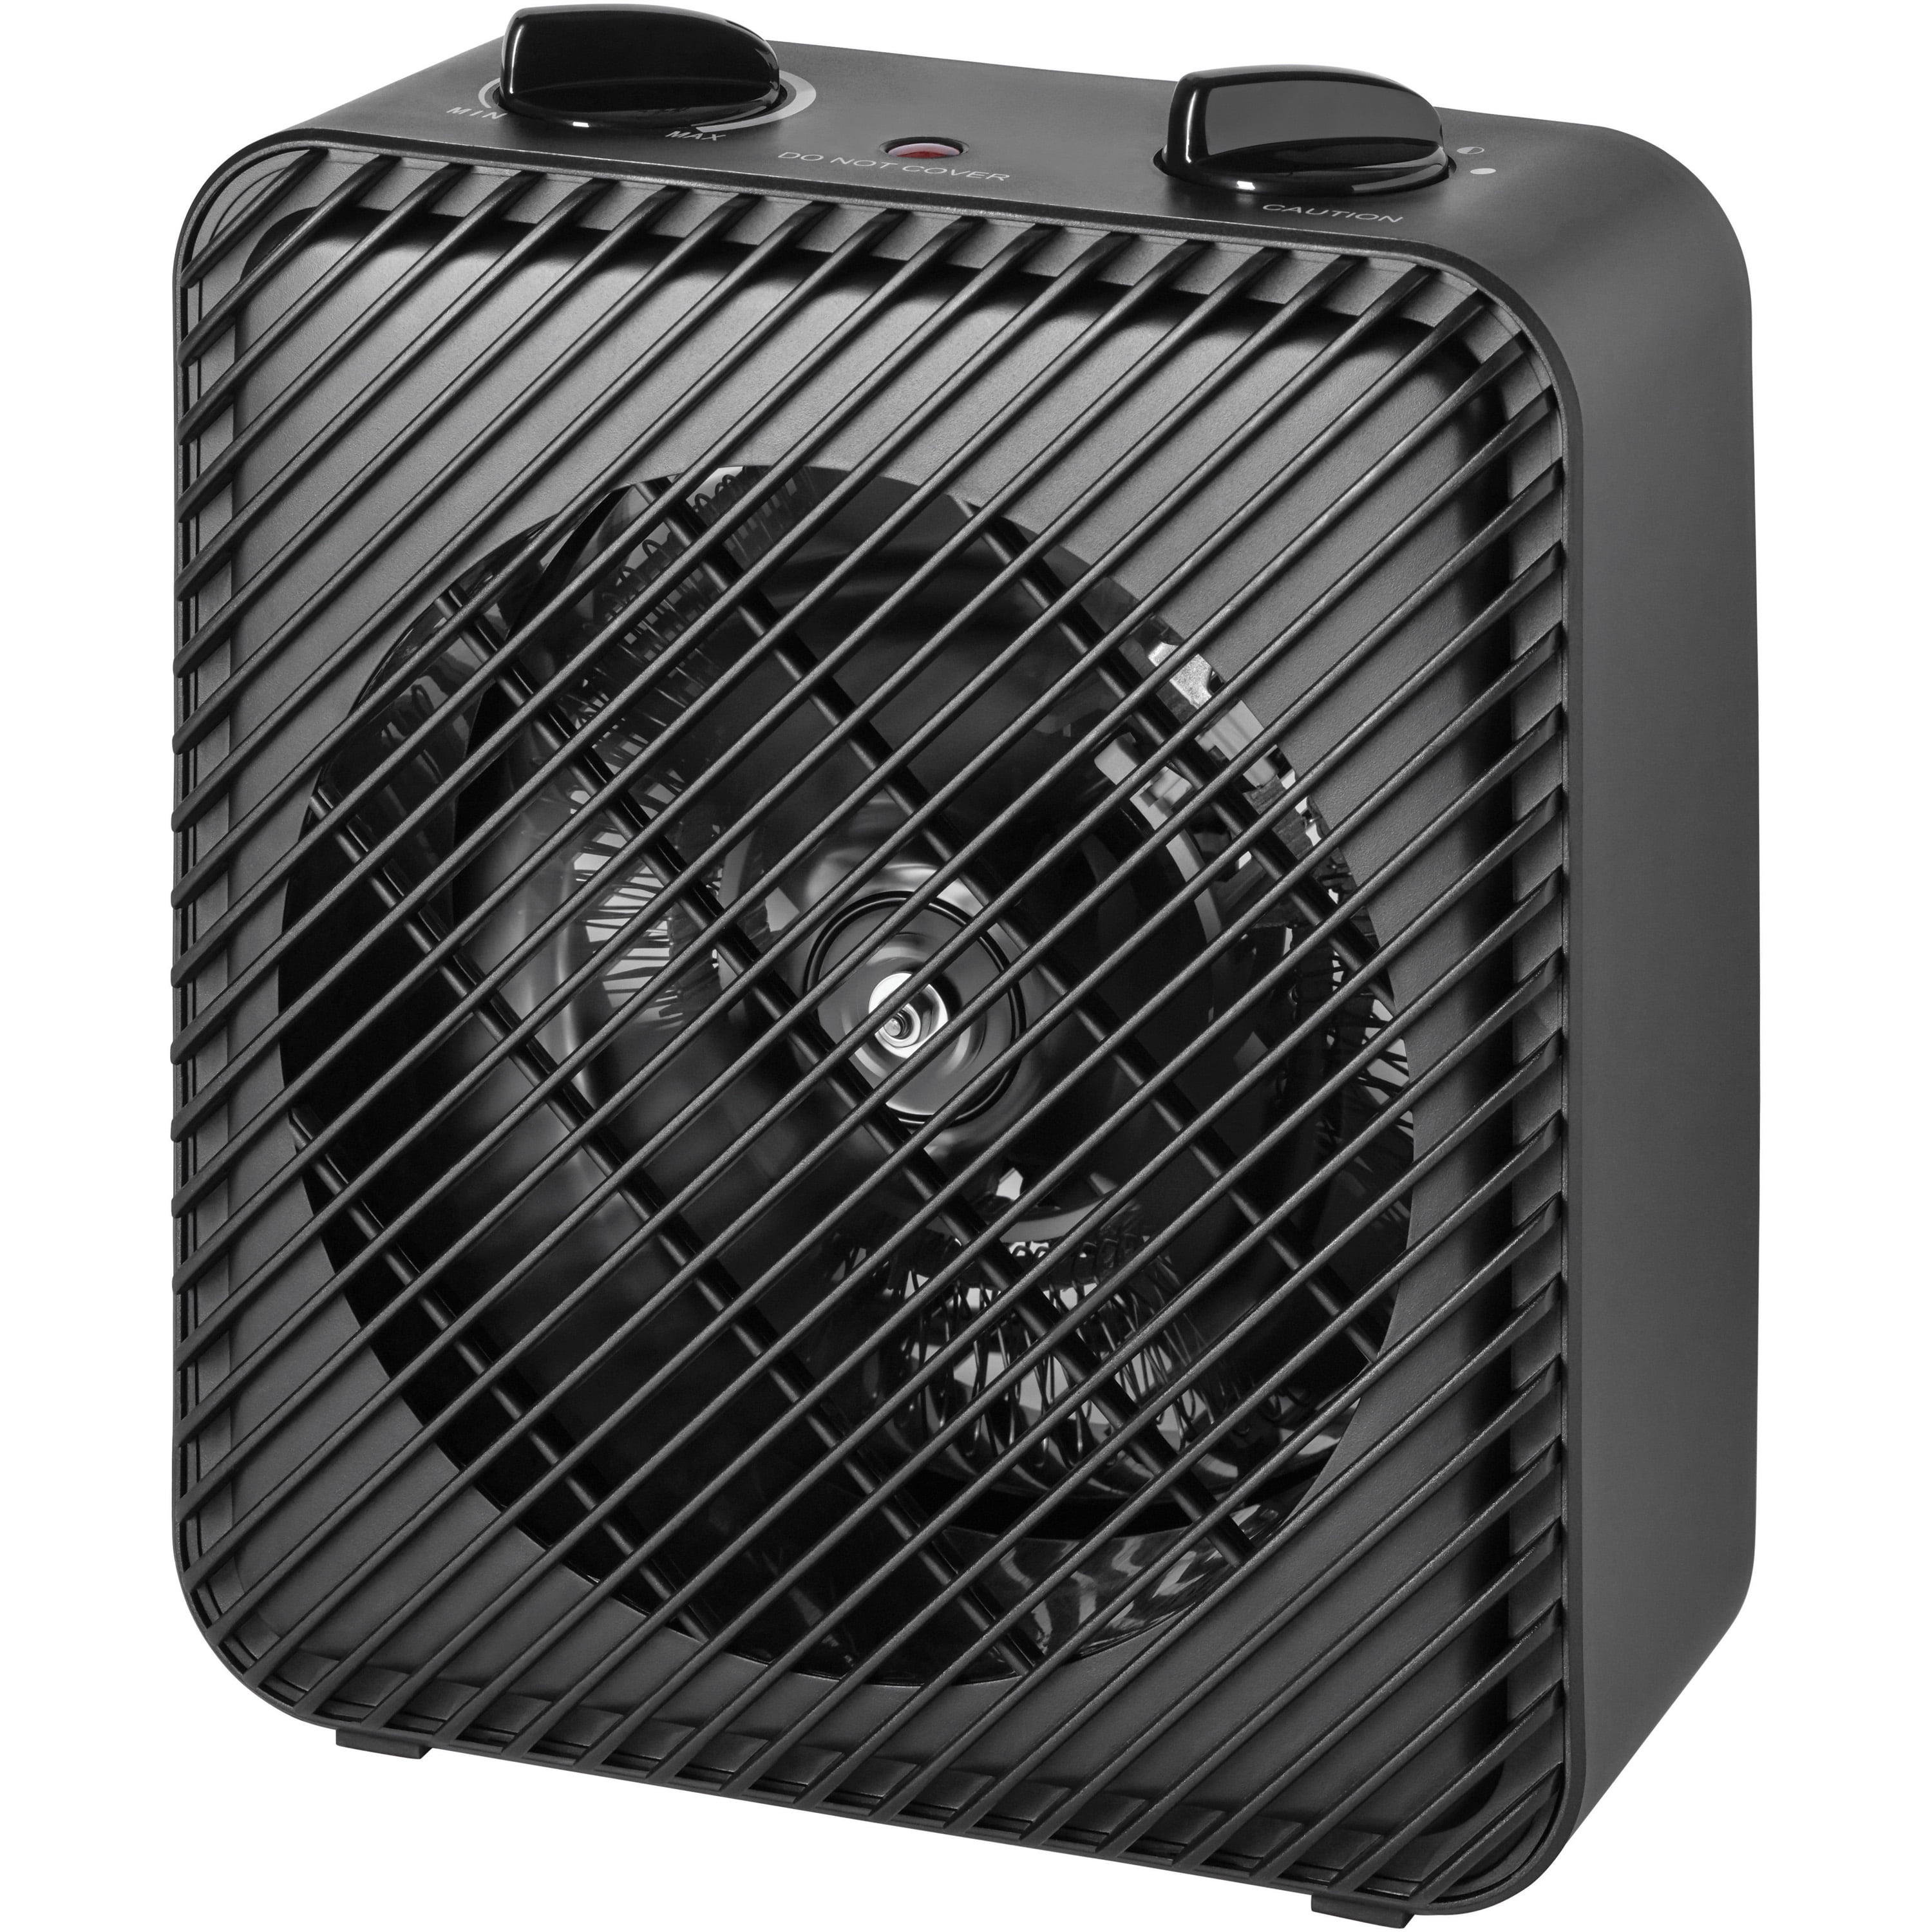 Pelonis Electric Fan Heater With Fans